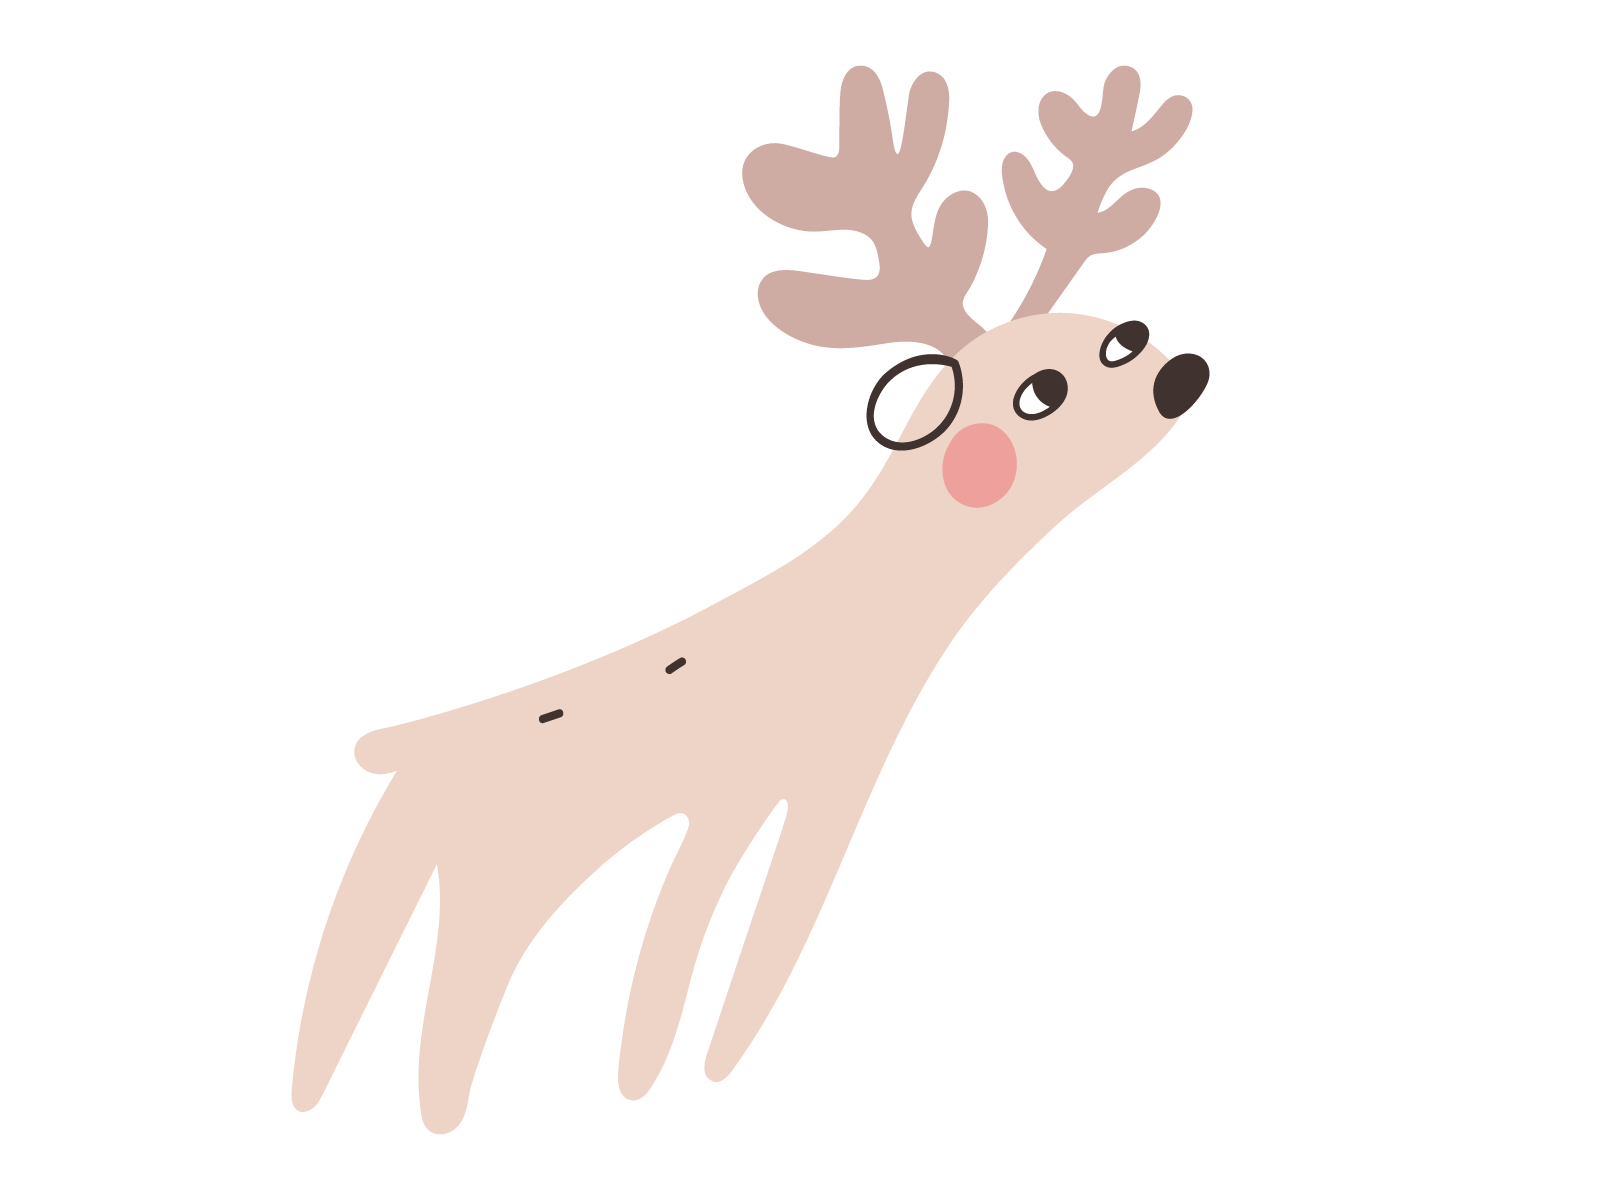 Deer animal deer design flat forest illustration vector woodland